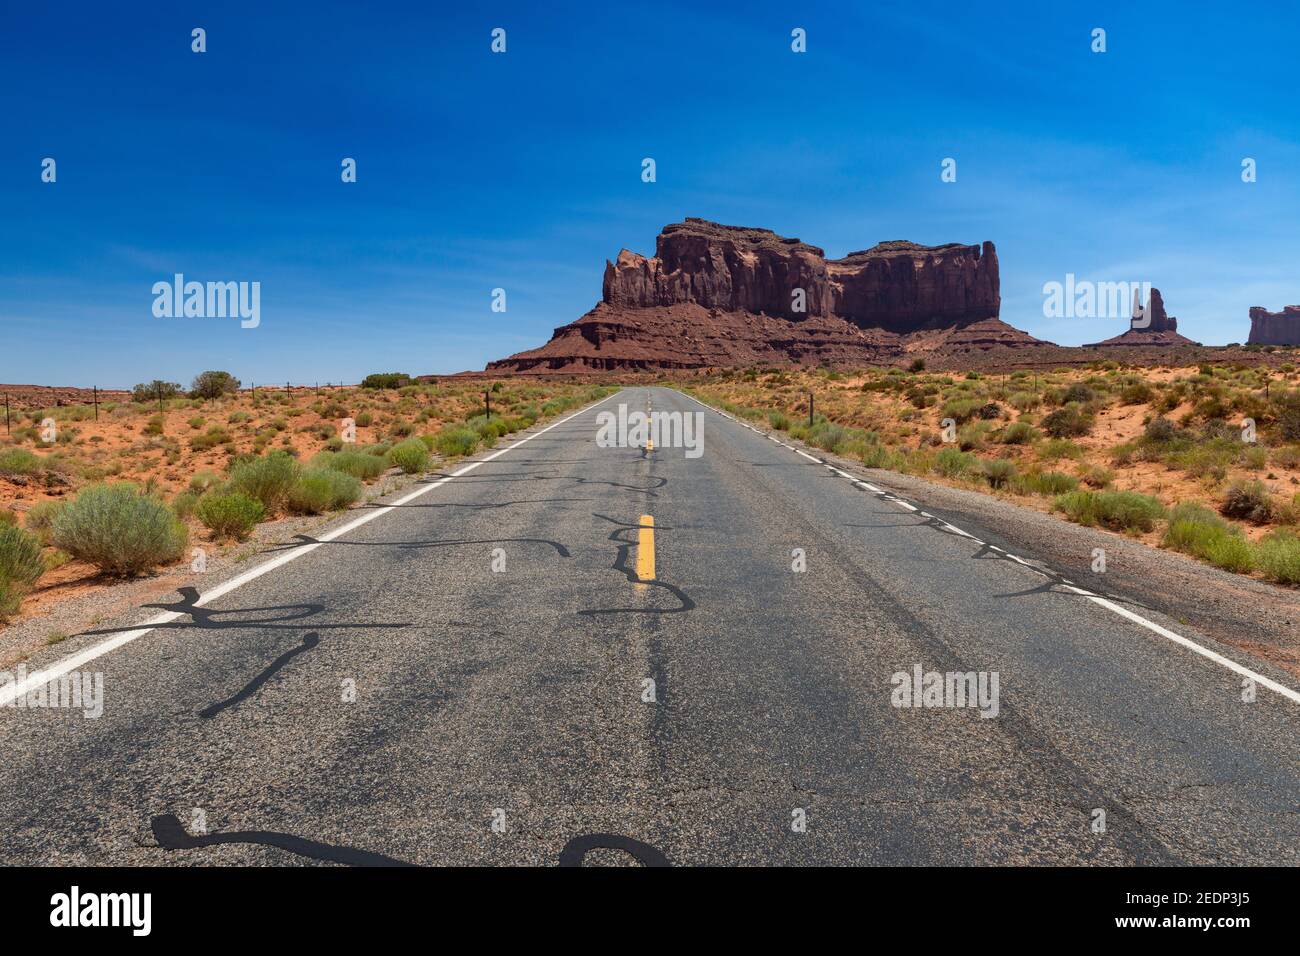 Landschaftlich schöner Blick auf das Monument Valley mit den Sandsteinbüten und einer Straße im Vordergrund; Konzept für Reisen in die USA und Roadtrip. Stockfoto